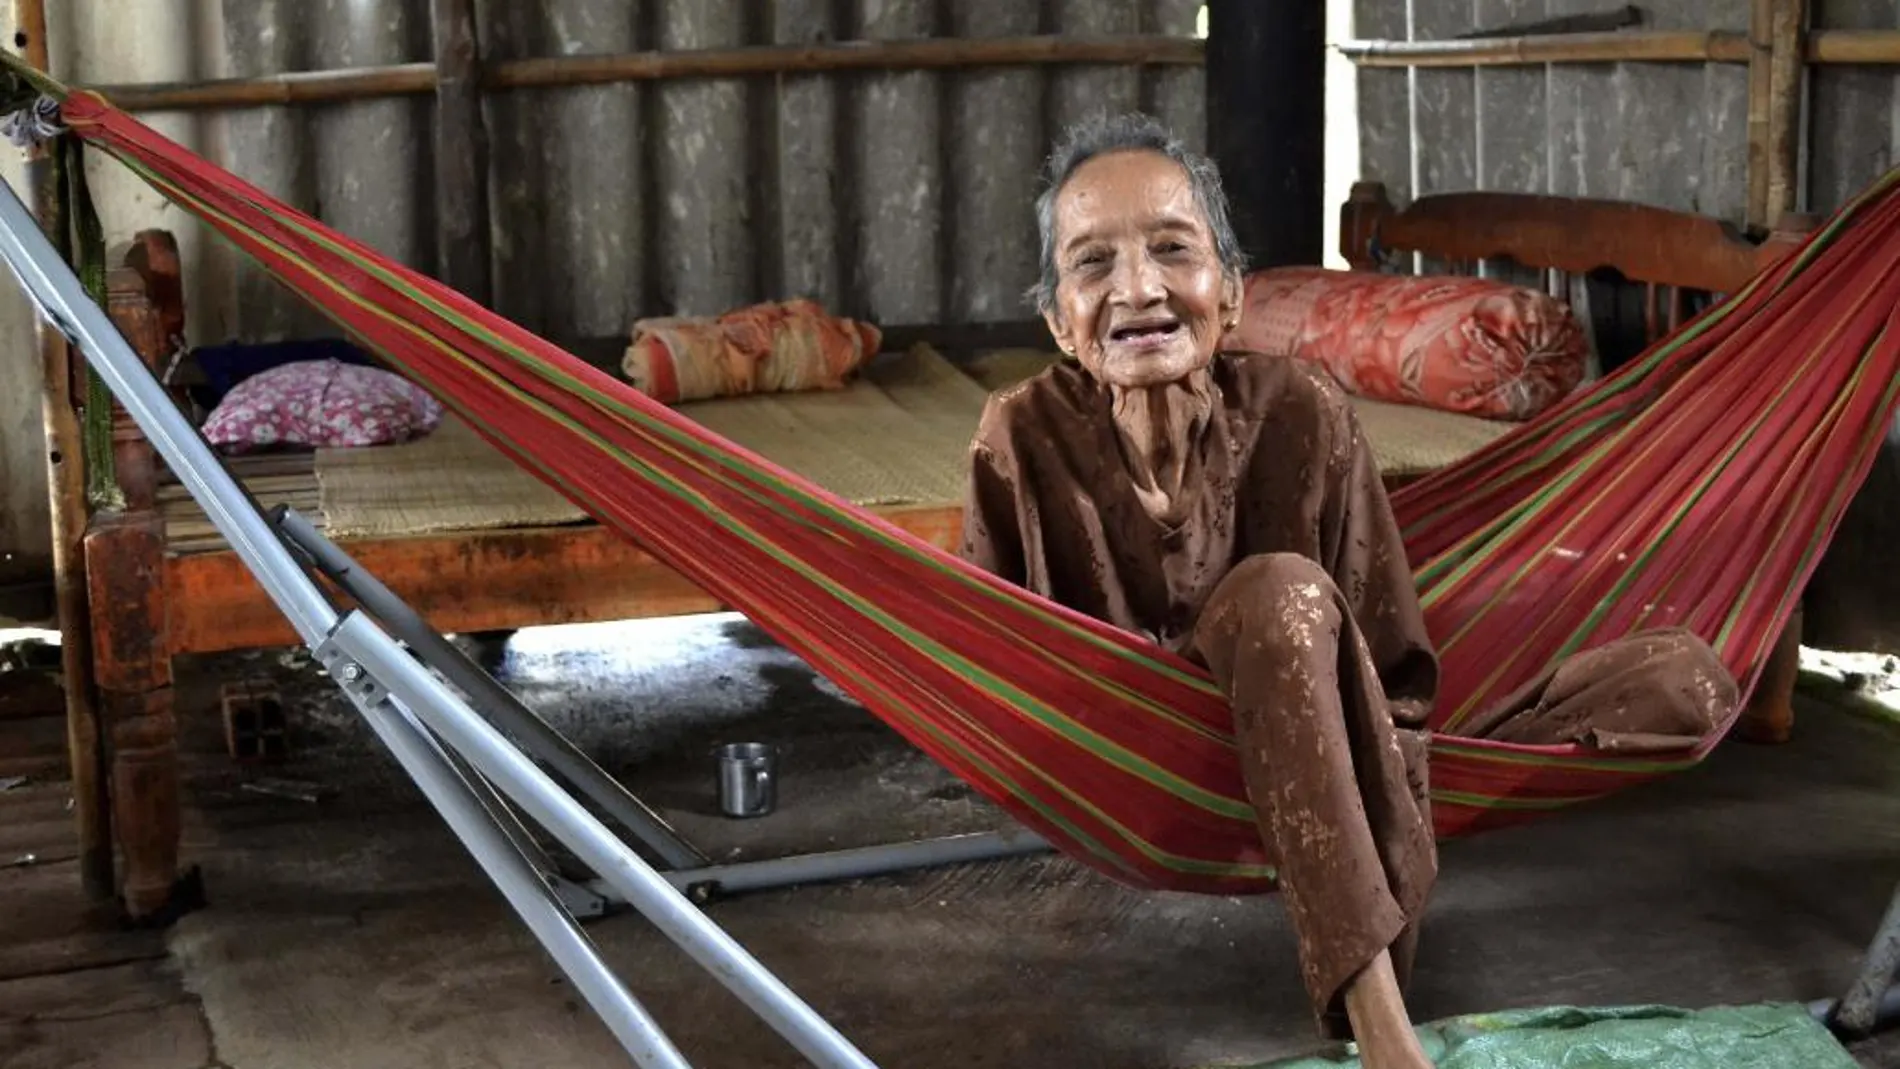 Postrada en una hamaca de su casa en un suburbio rural de Ho Chi Minh (antigua Saigón), la anciana, de aspecto frágil, sonríe a los visitantes